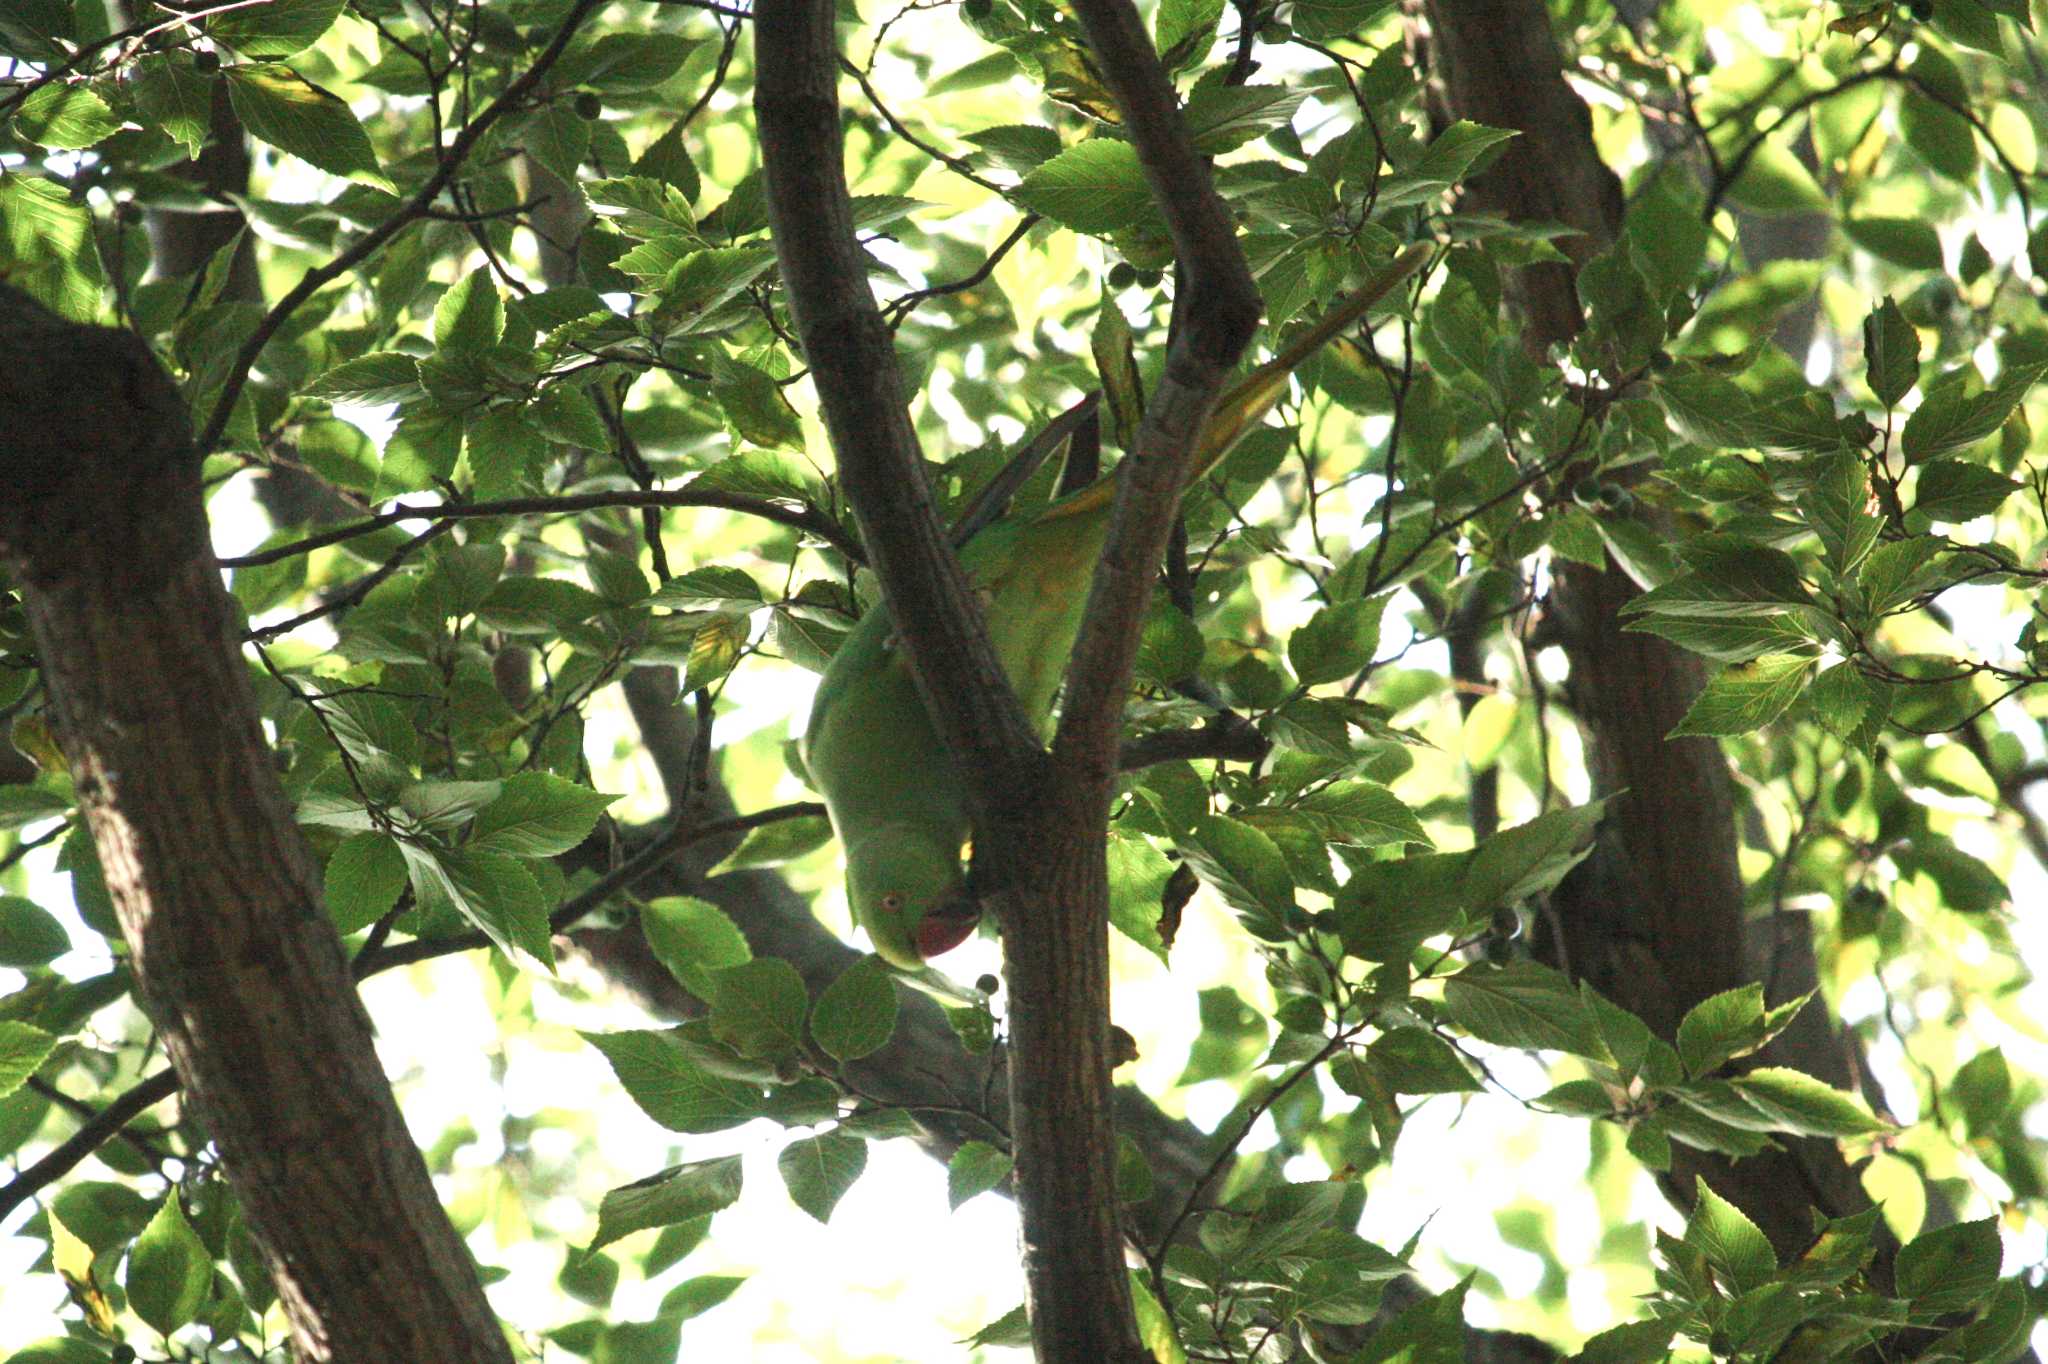 Photo of Indian Rose-necked Parakeet at 等々力渓谷 by Yuka